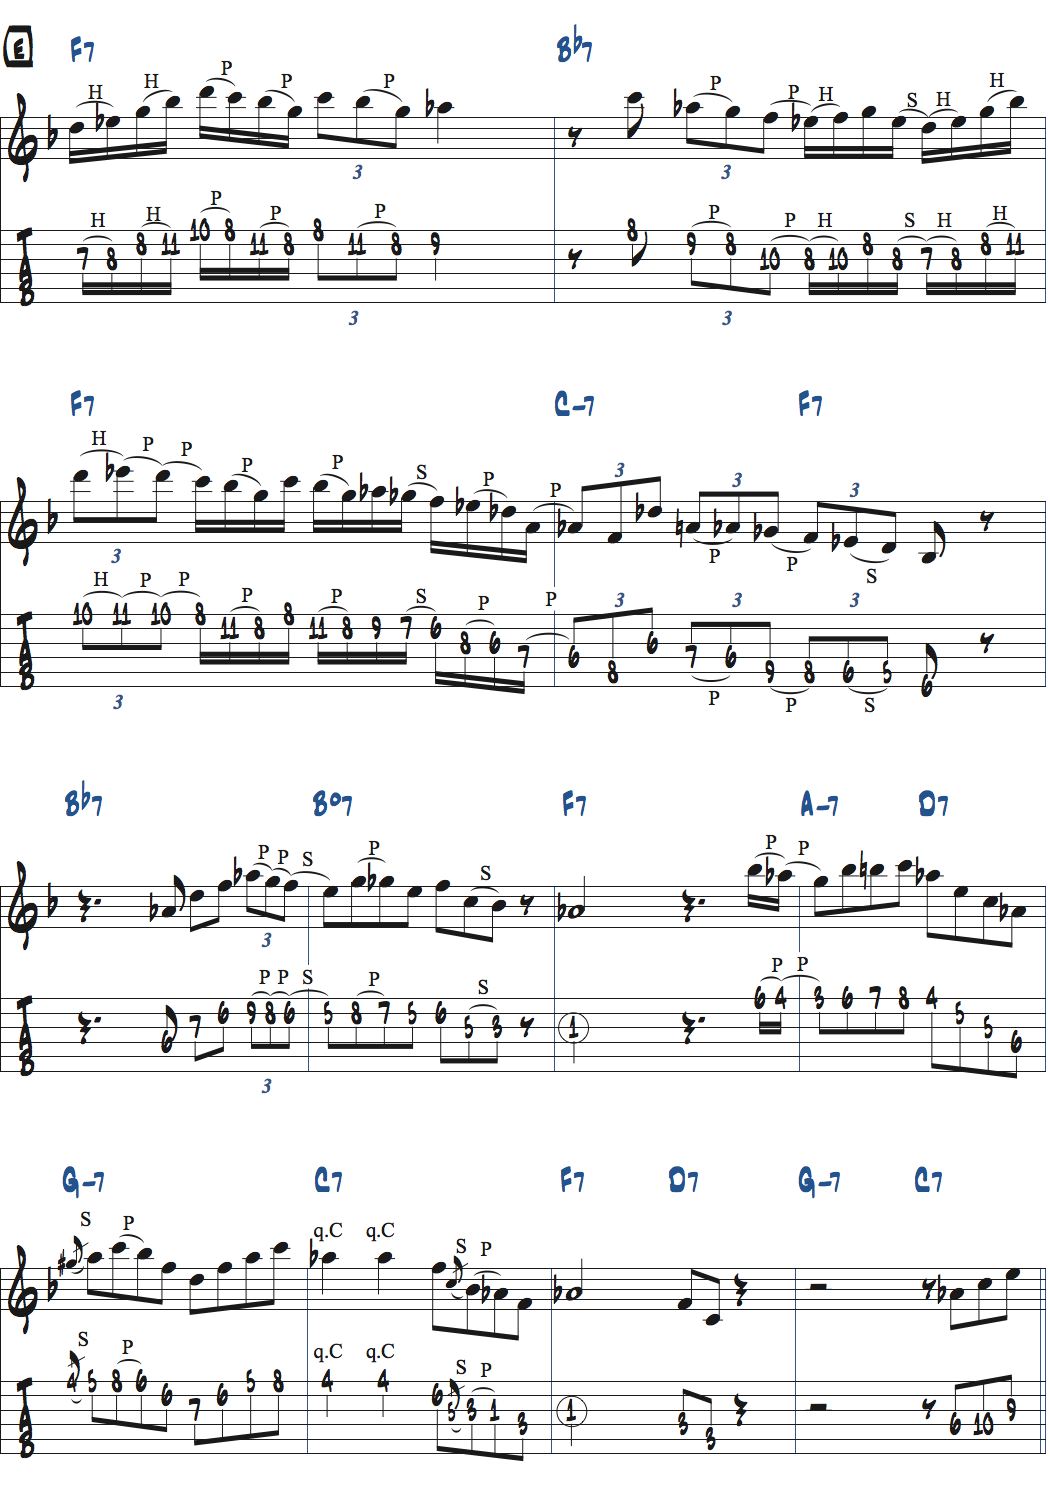 キーFのジャズブルースでのアドリブ楽譜ページ5